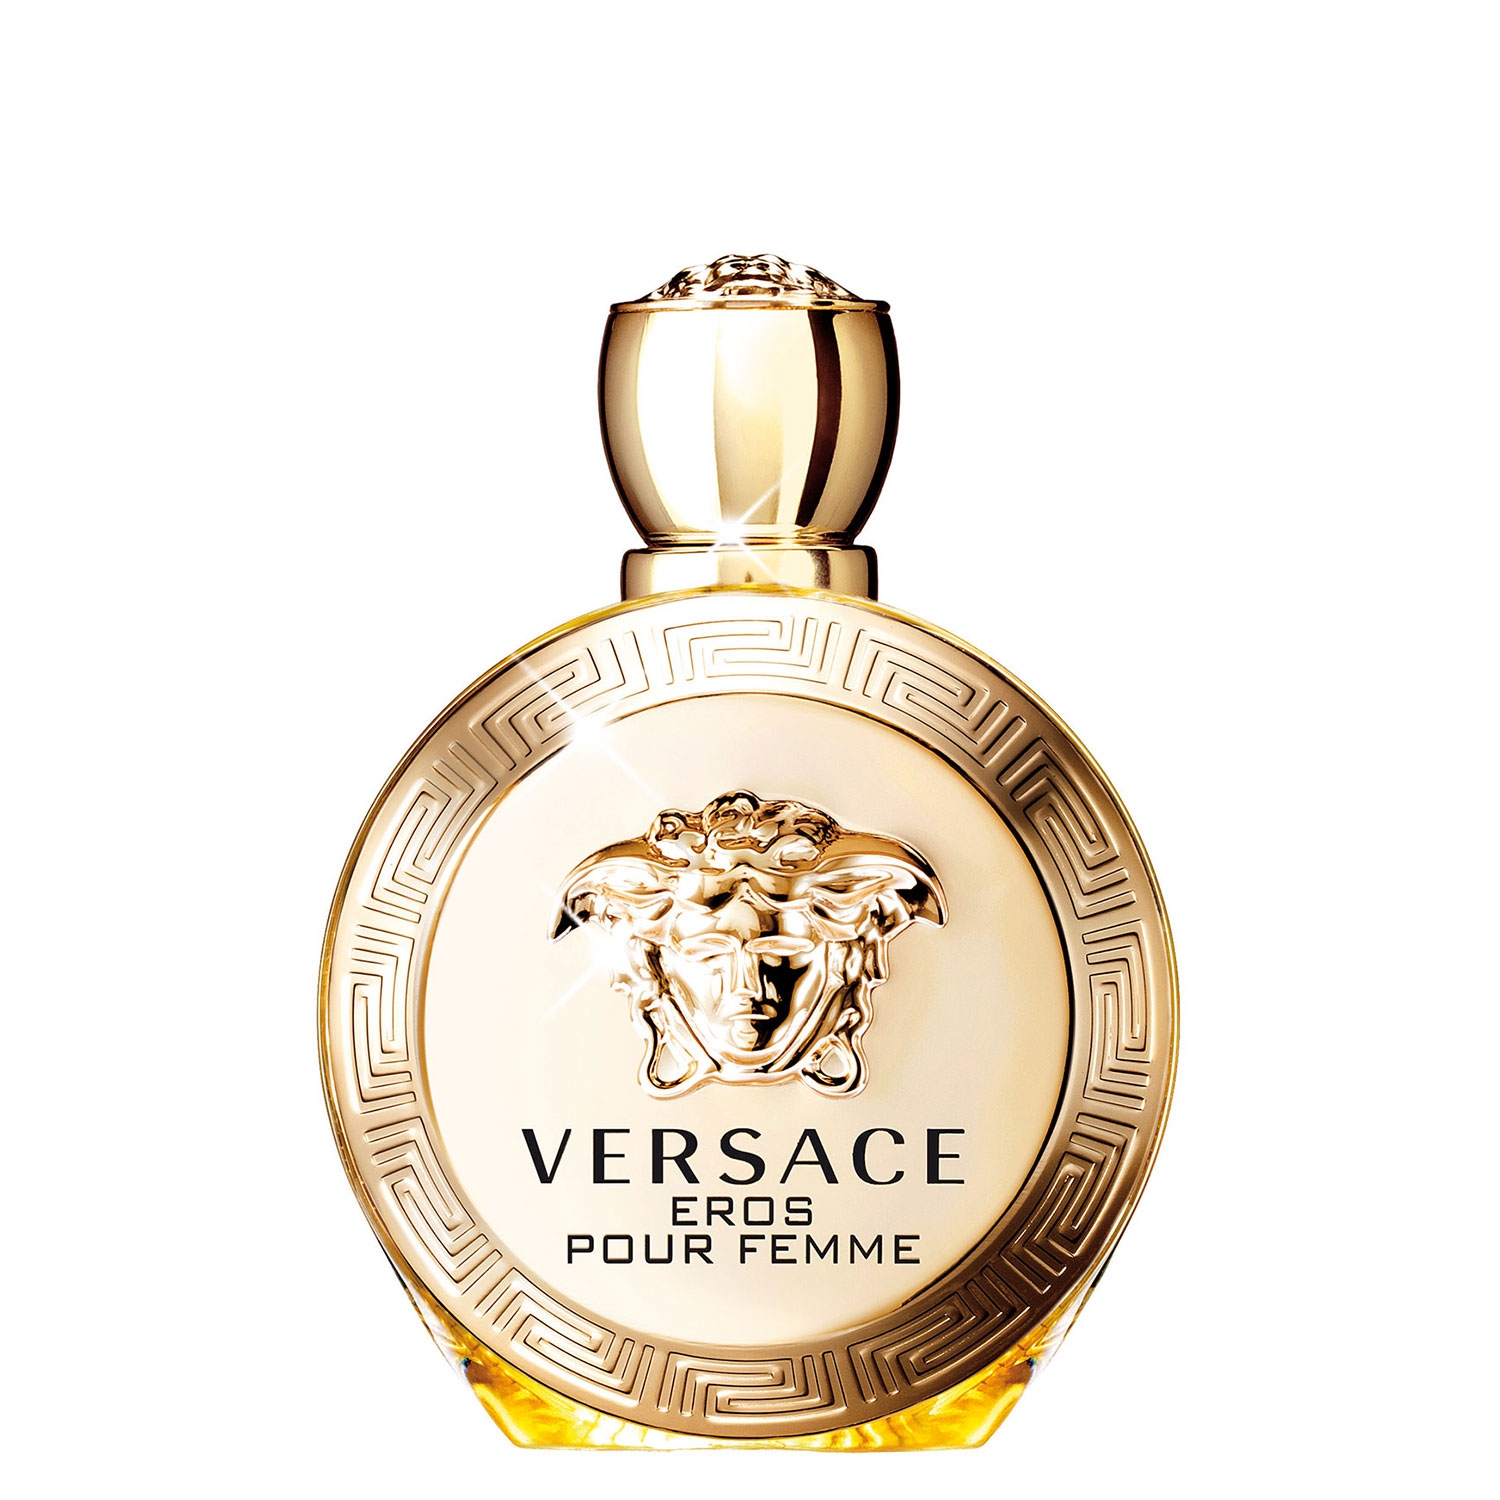 Produktbild von Versace Eros - Eau de Parfum Pour Femme